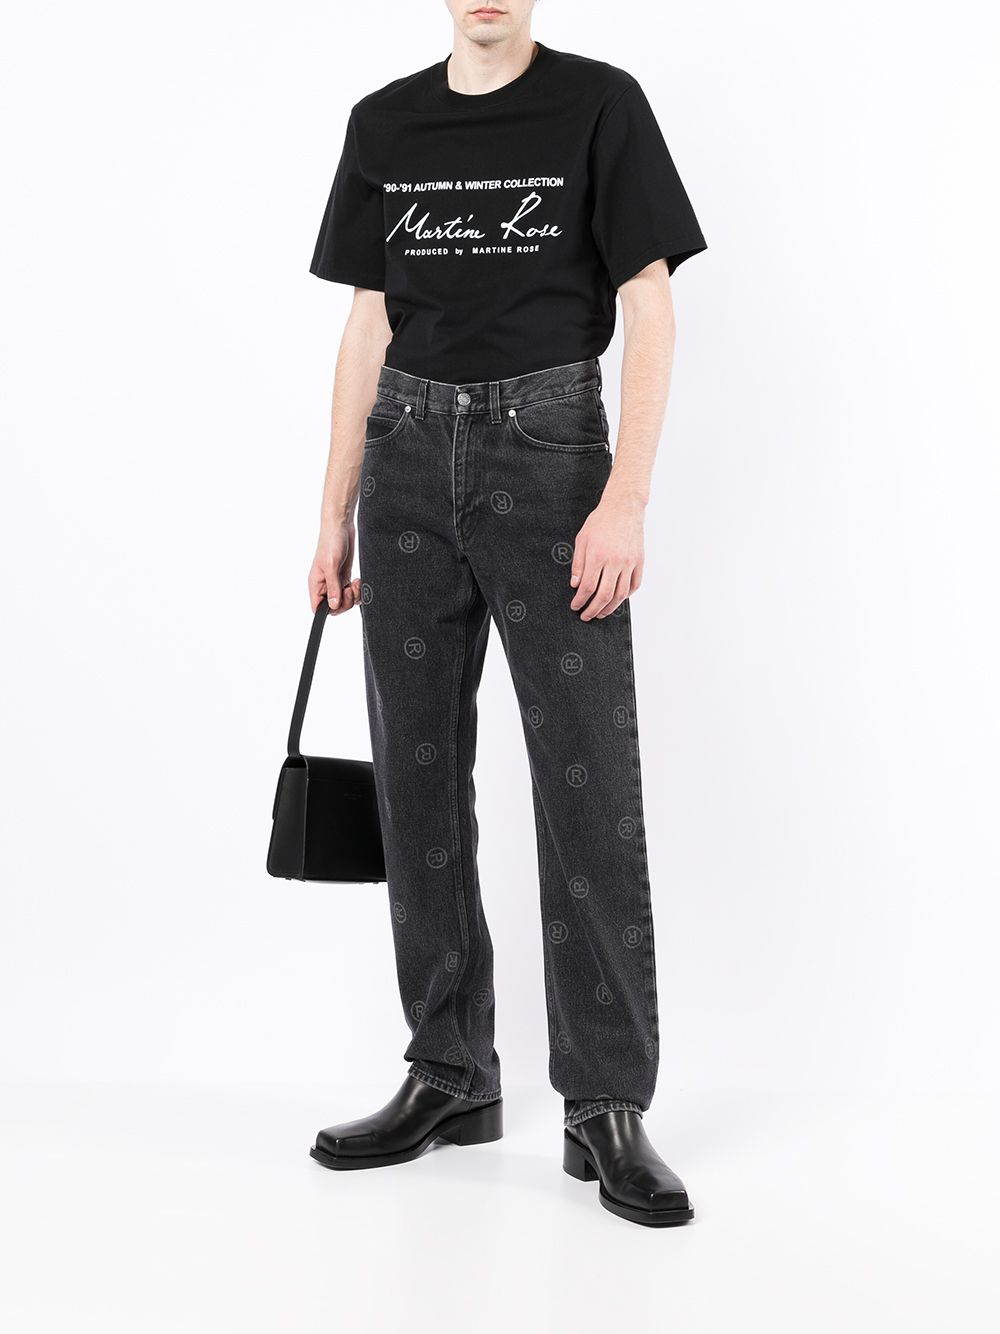 фото Martine rose прямые джинсы с логотипом